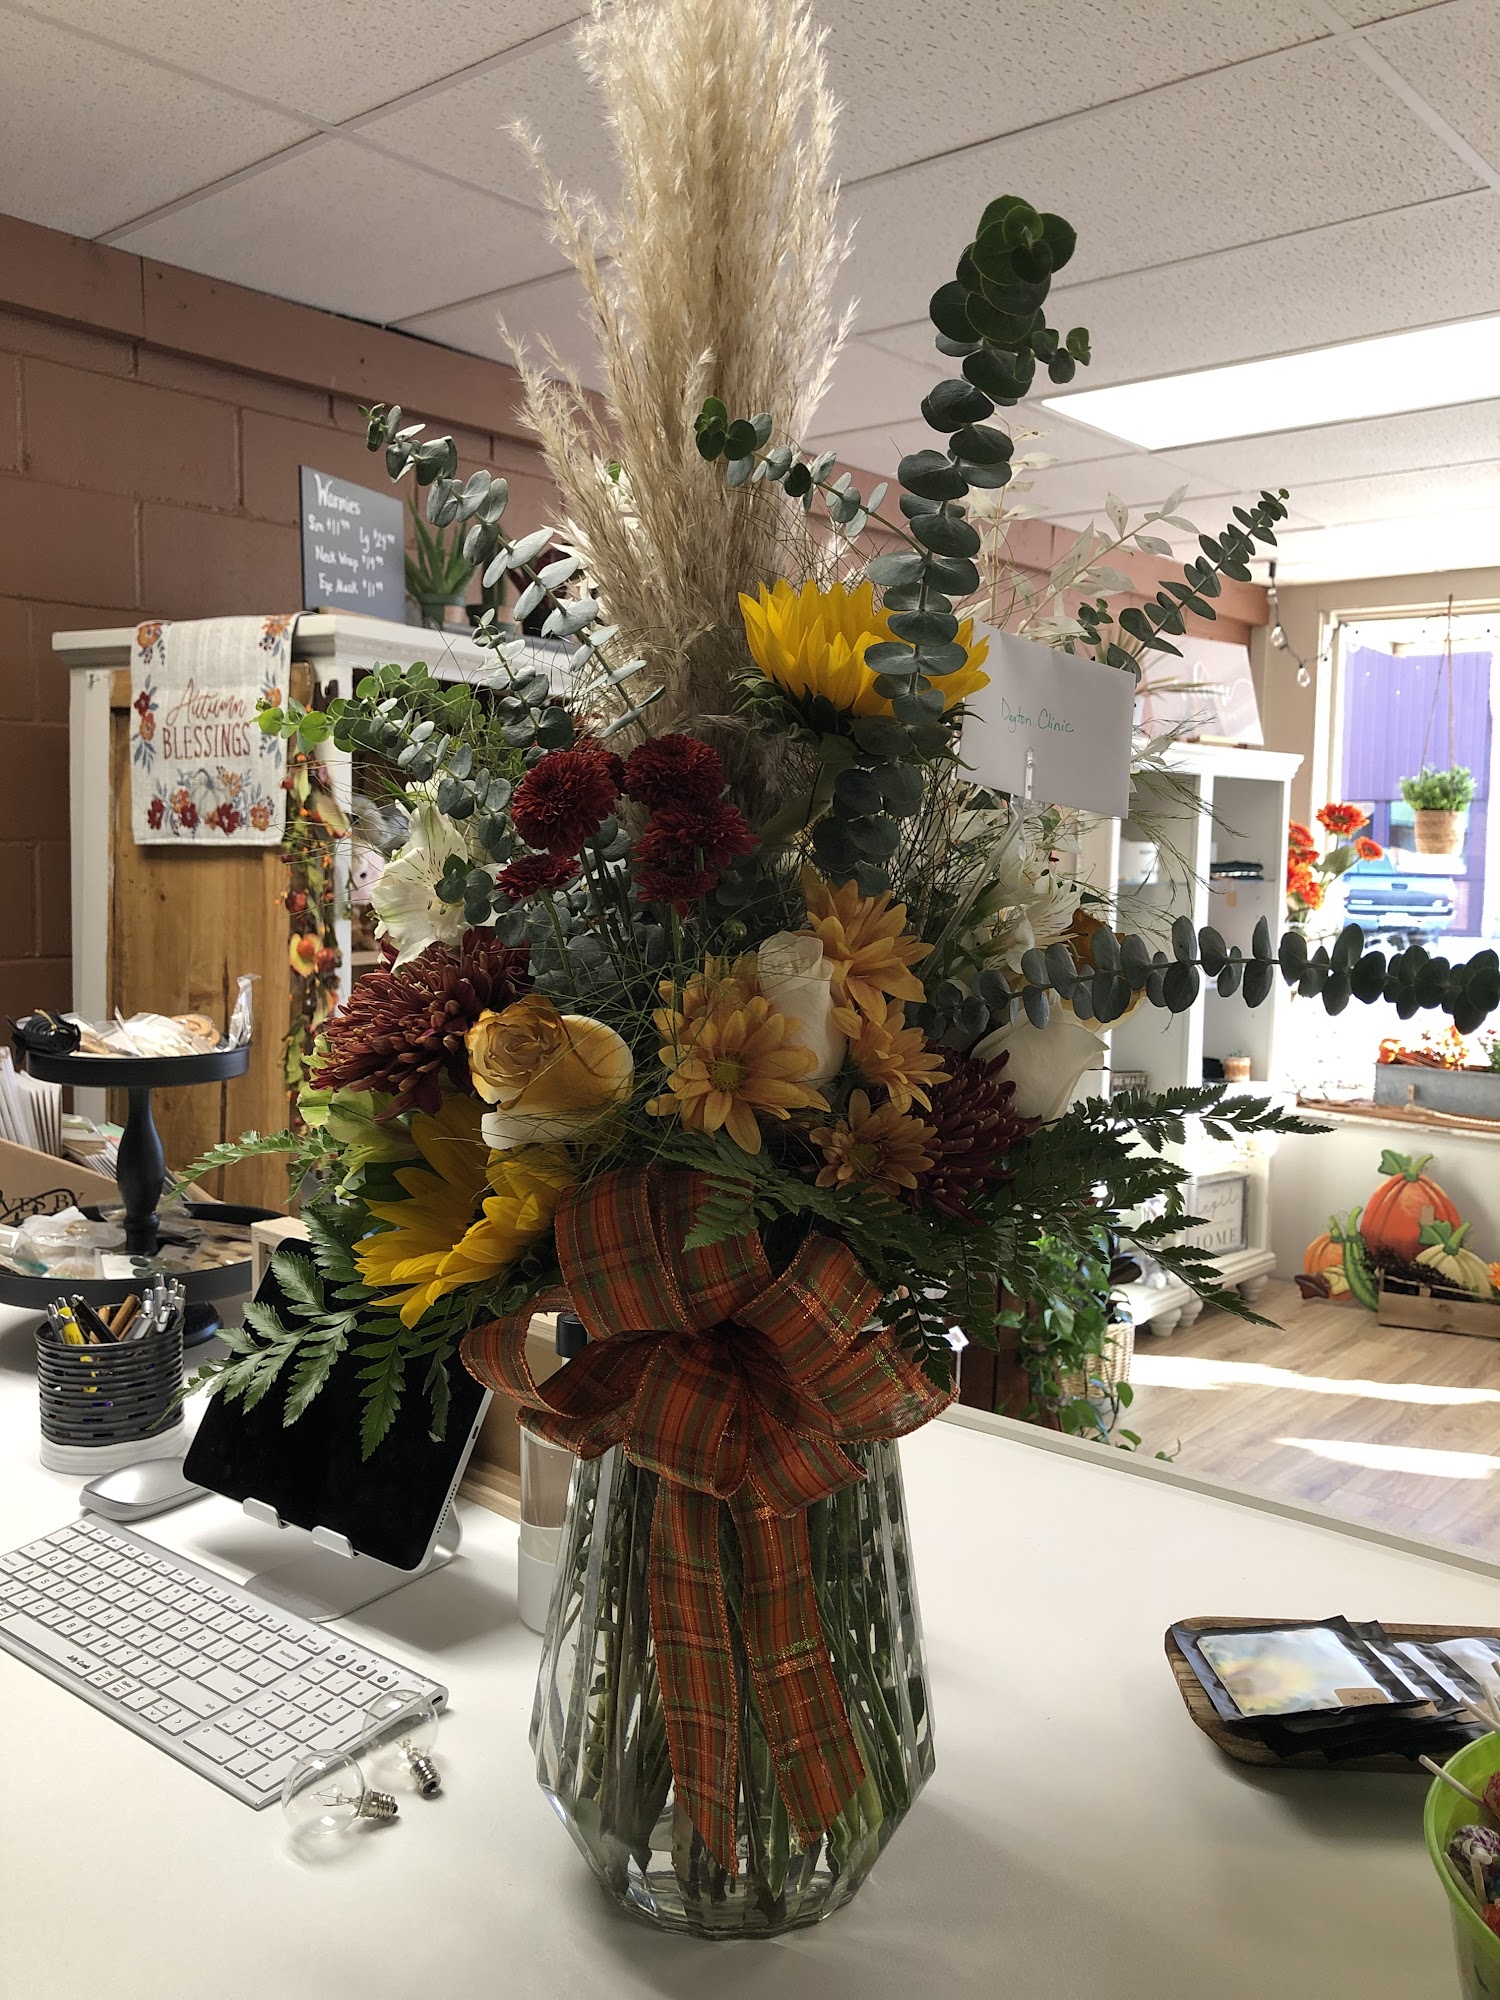 Everlasting Flowers & Gifts 233 W Walnut St, Ogden Iowa 50212